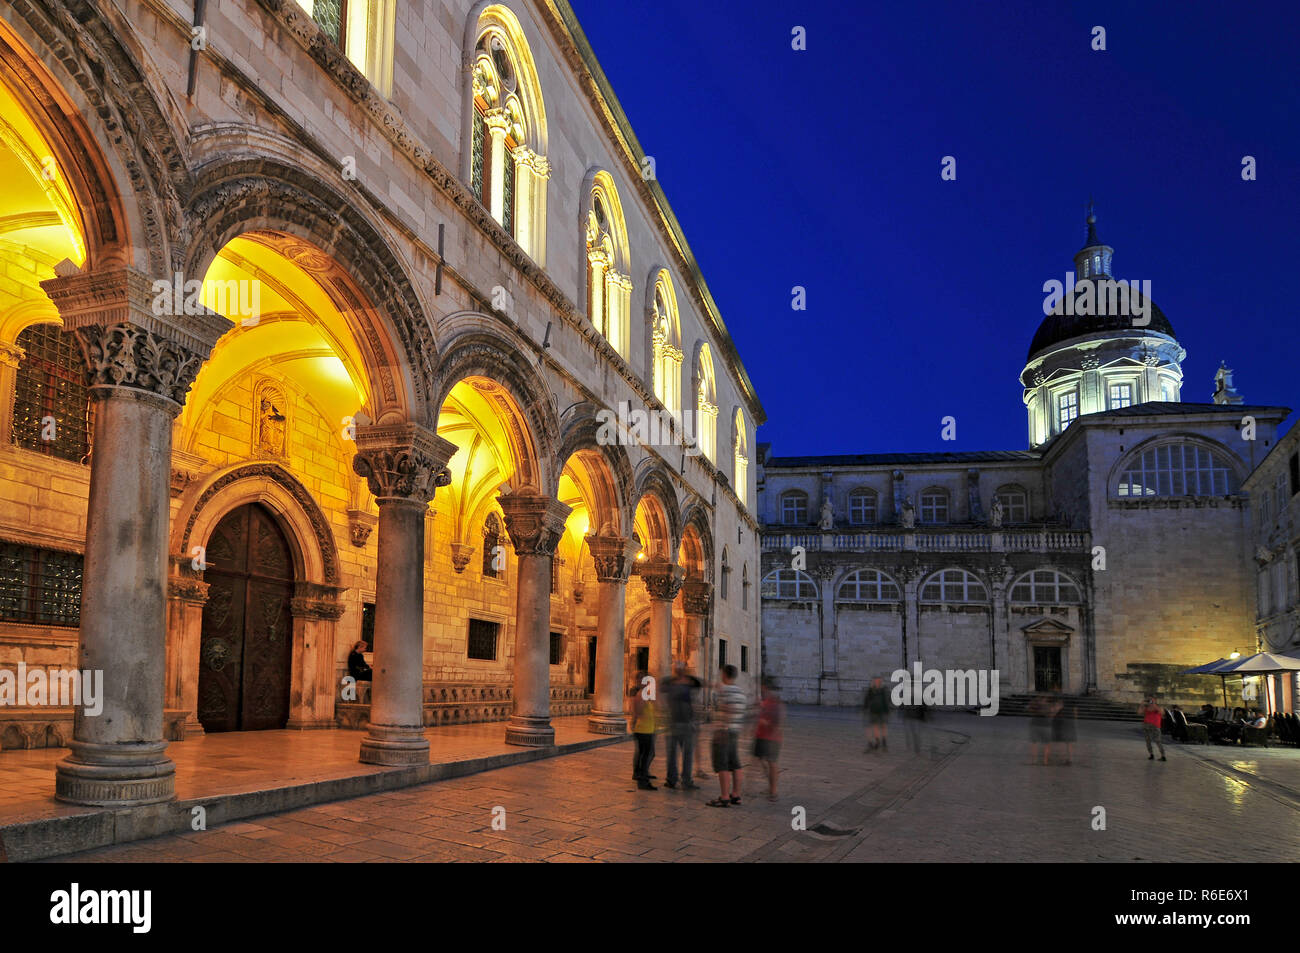 Palais des recteurs et la cathédrale au crépuscule, Site du patrimoine mondial de l'UNESCO, Dubrovnik, Dalmatie, Croatie, Europe Banque D'Images